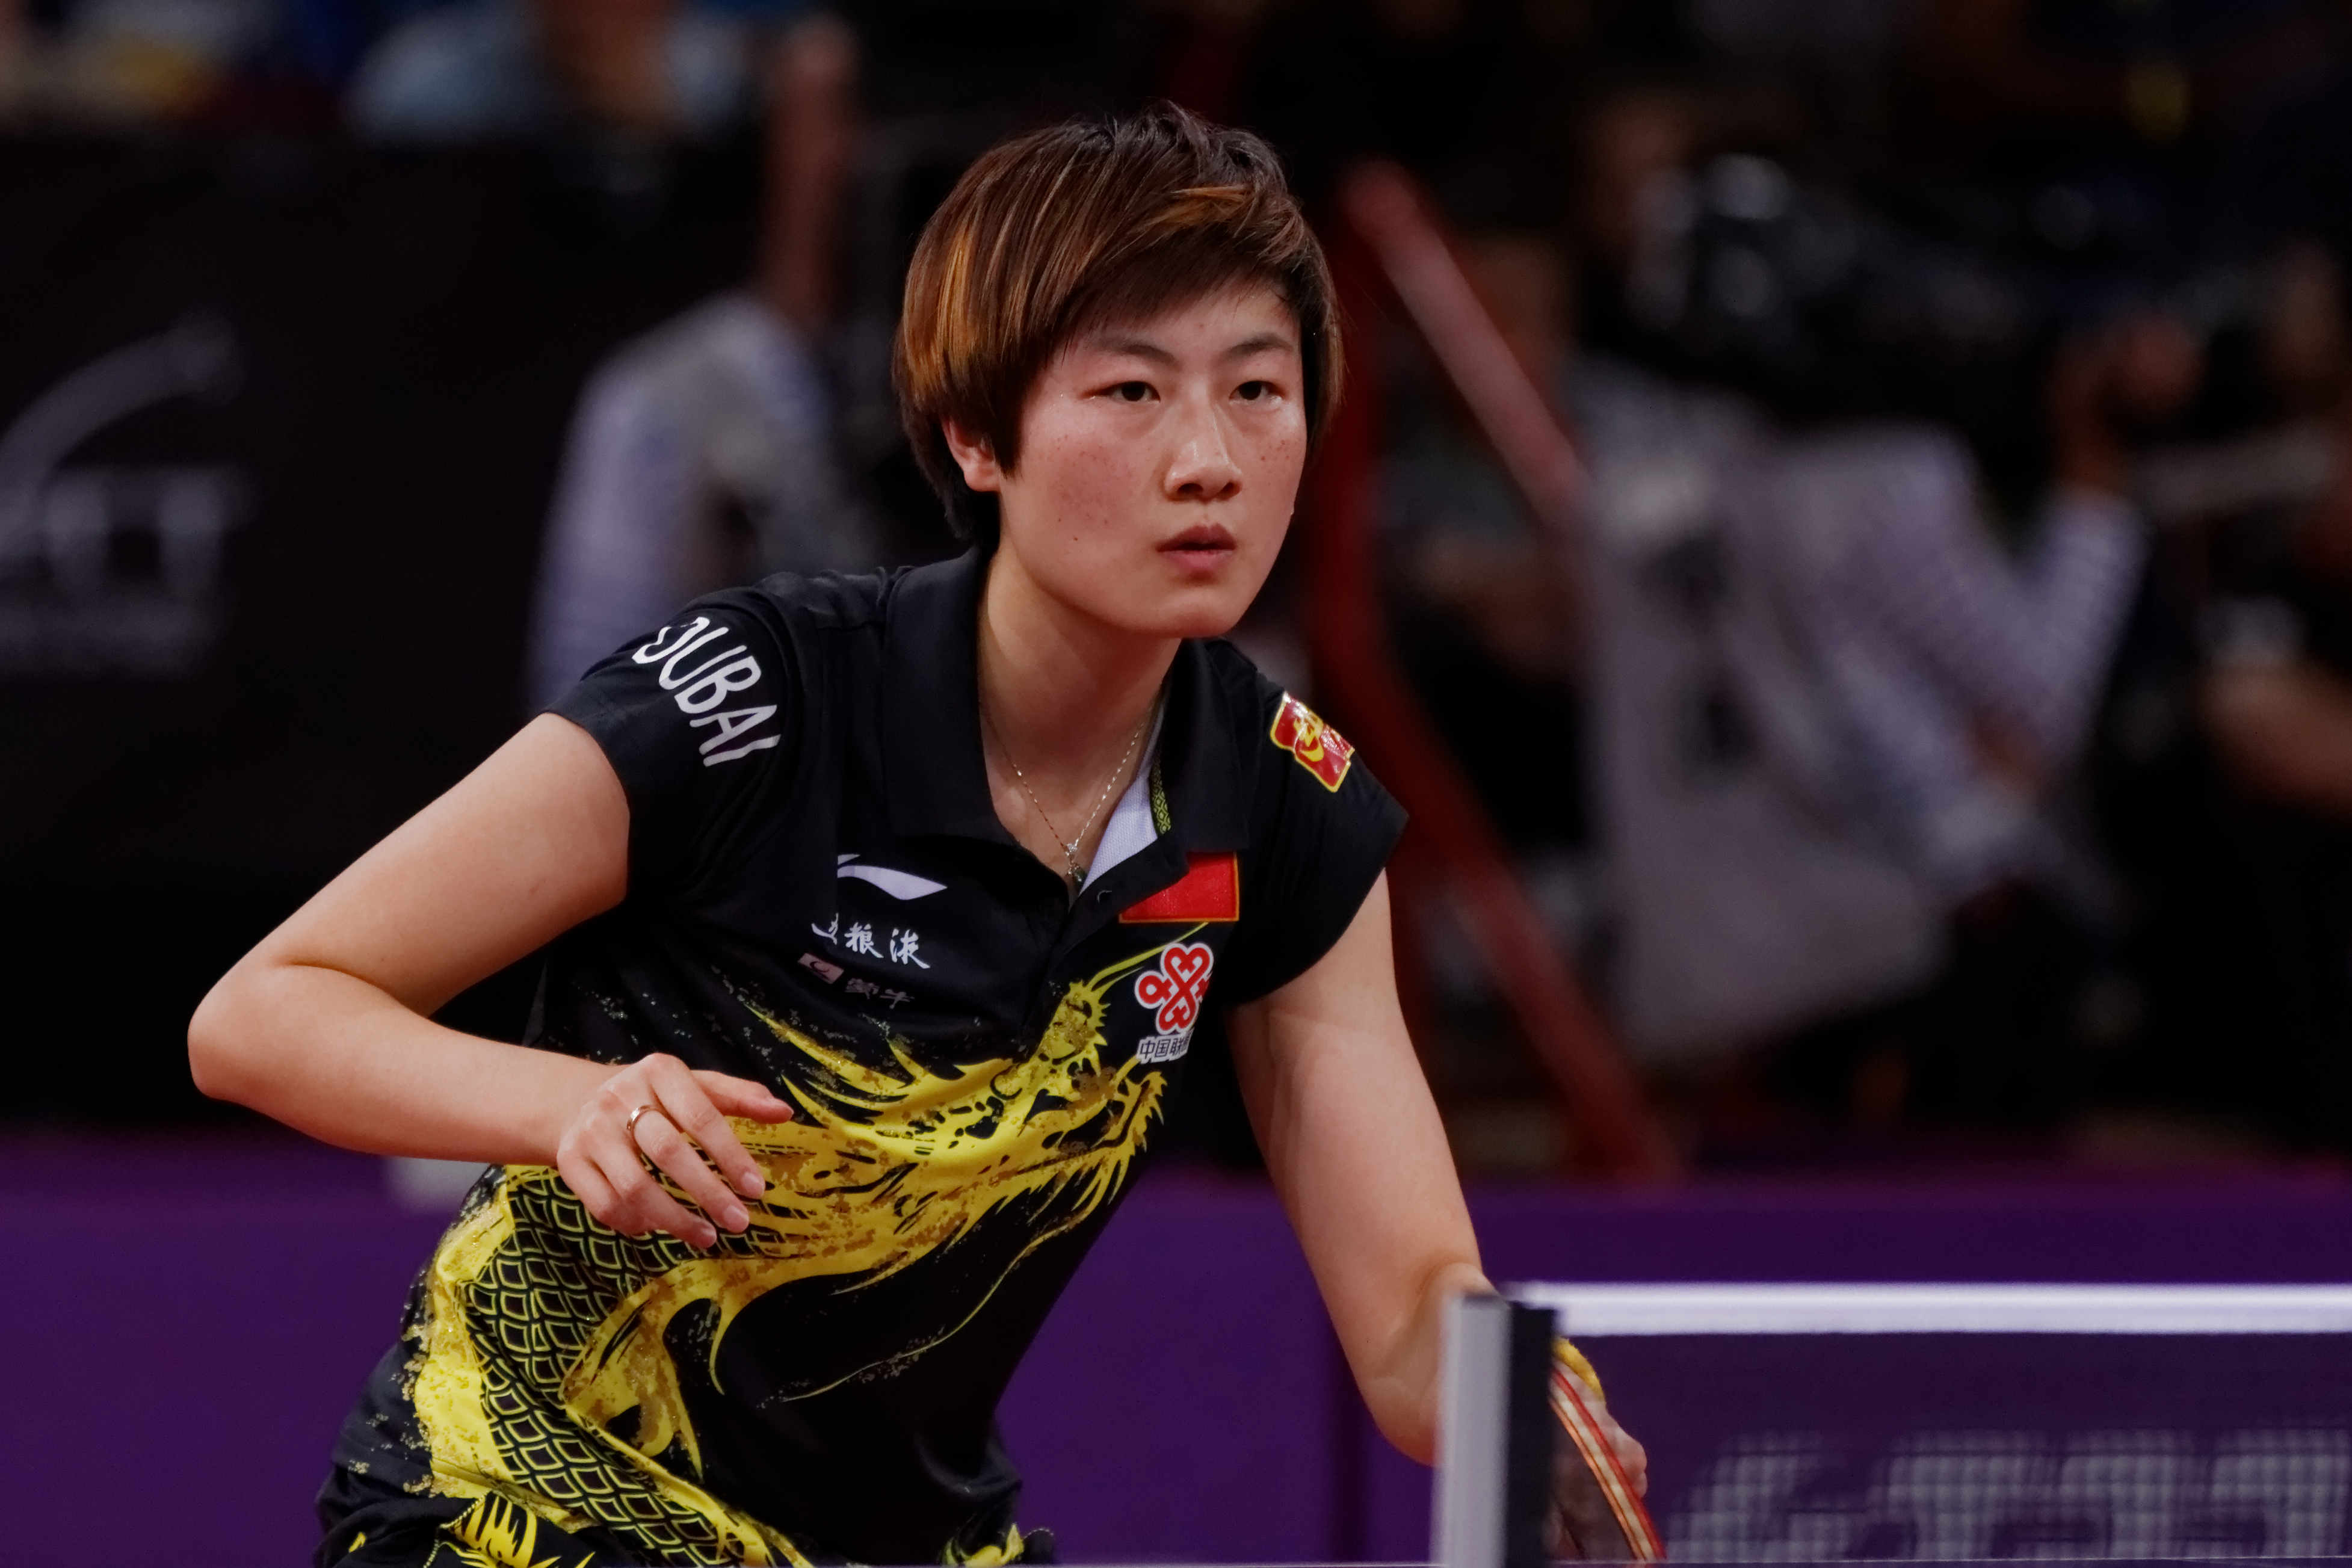 Mondial Ping - Women's Singles - Semifinal - Ding Ning-Li Xiaoxia - 04...